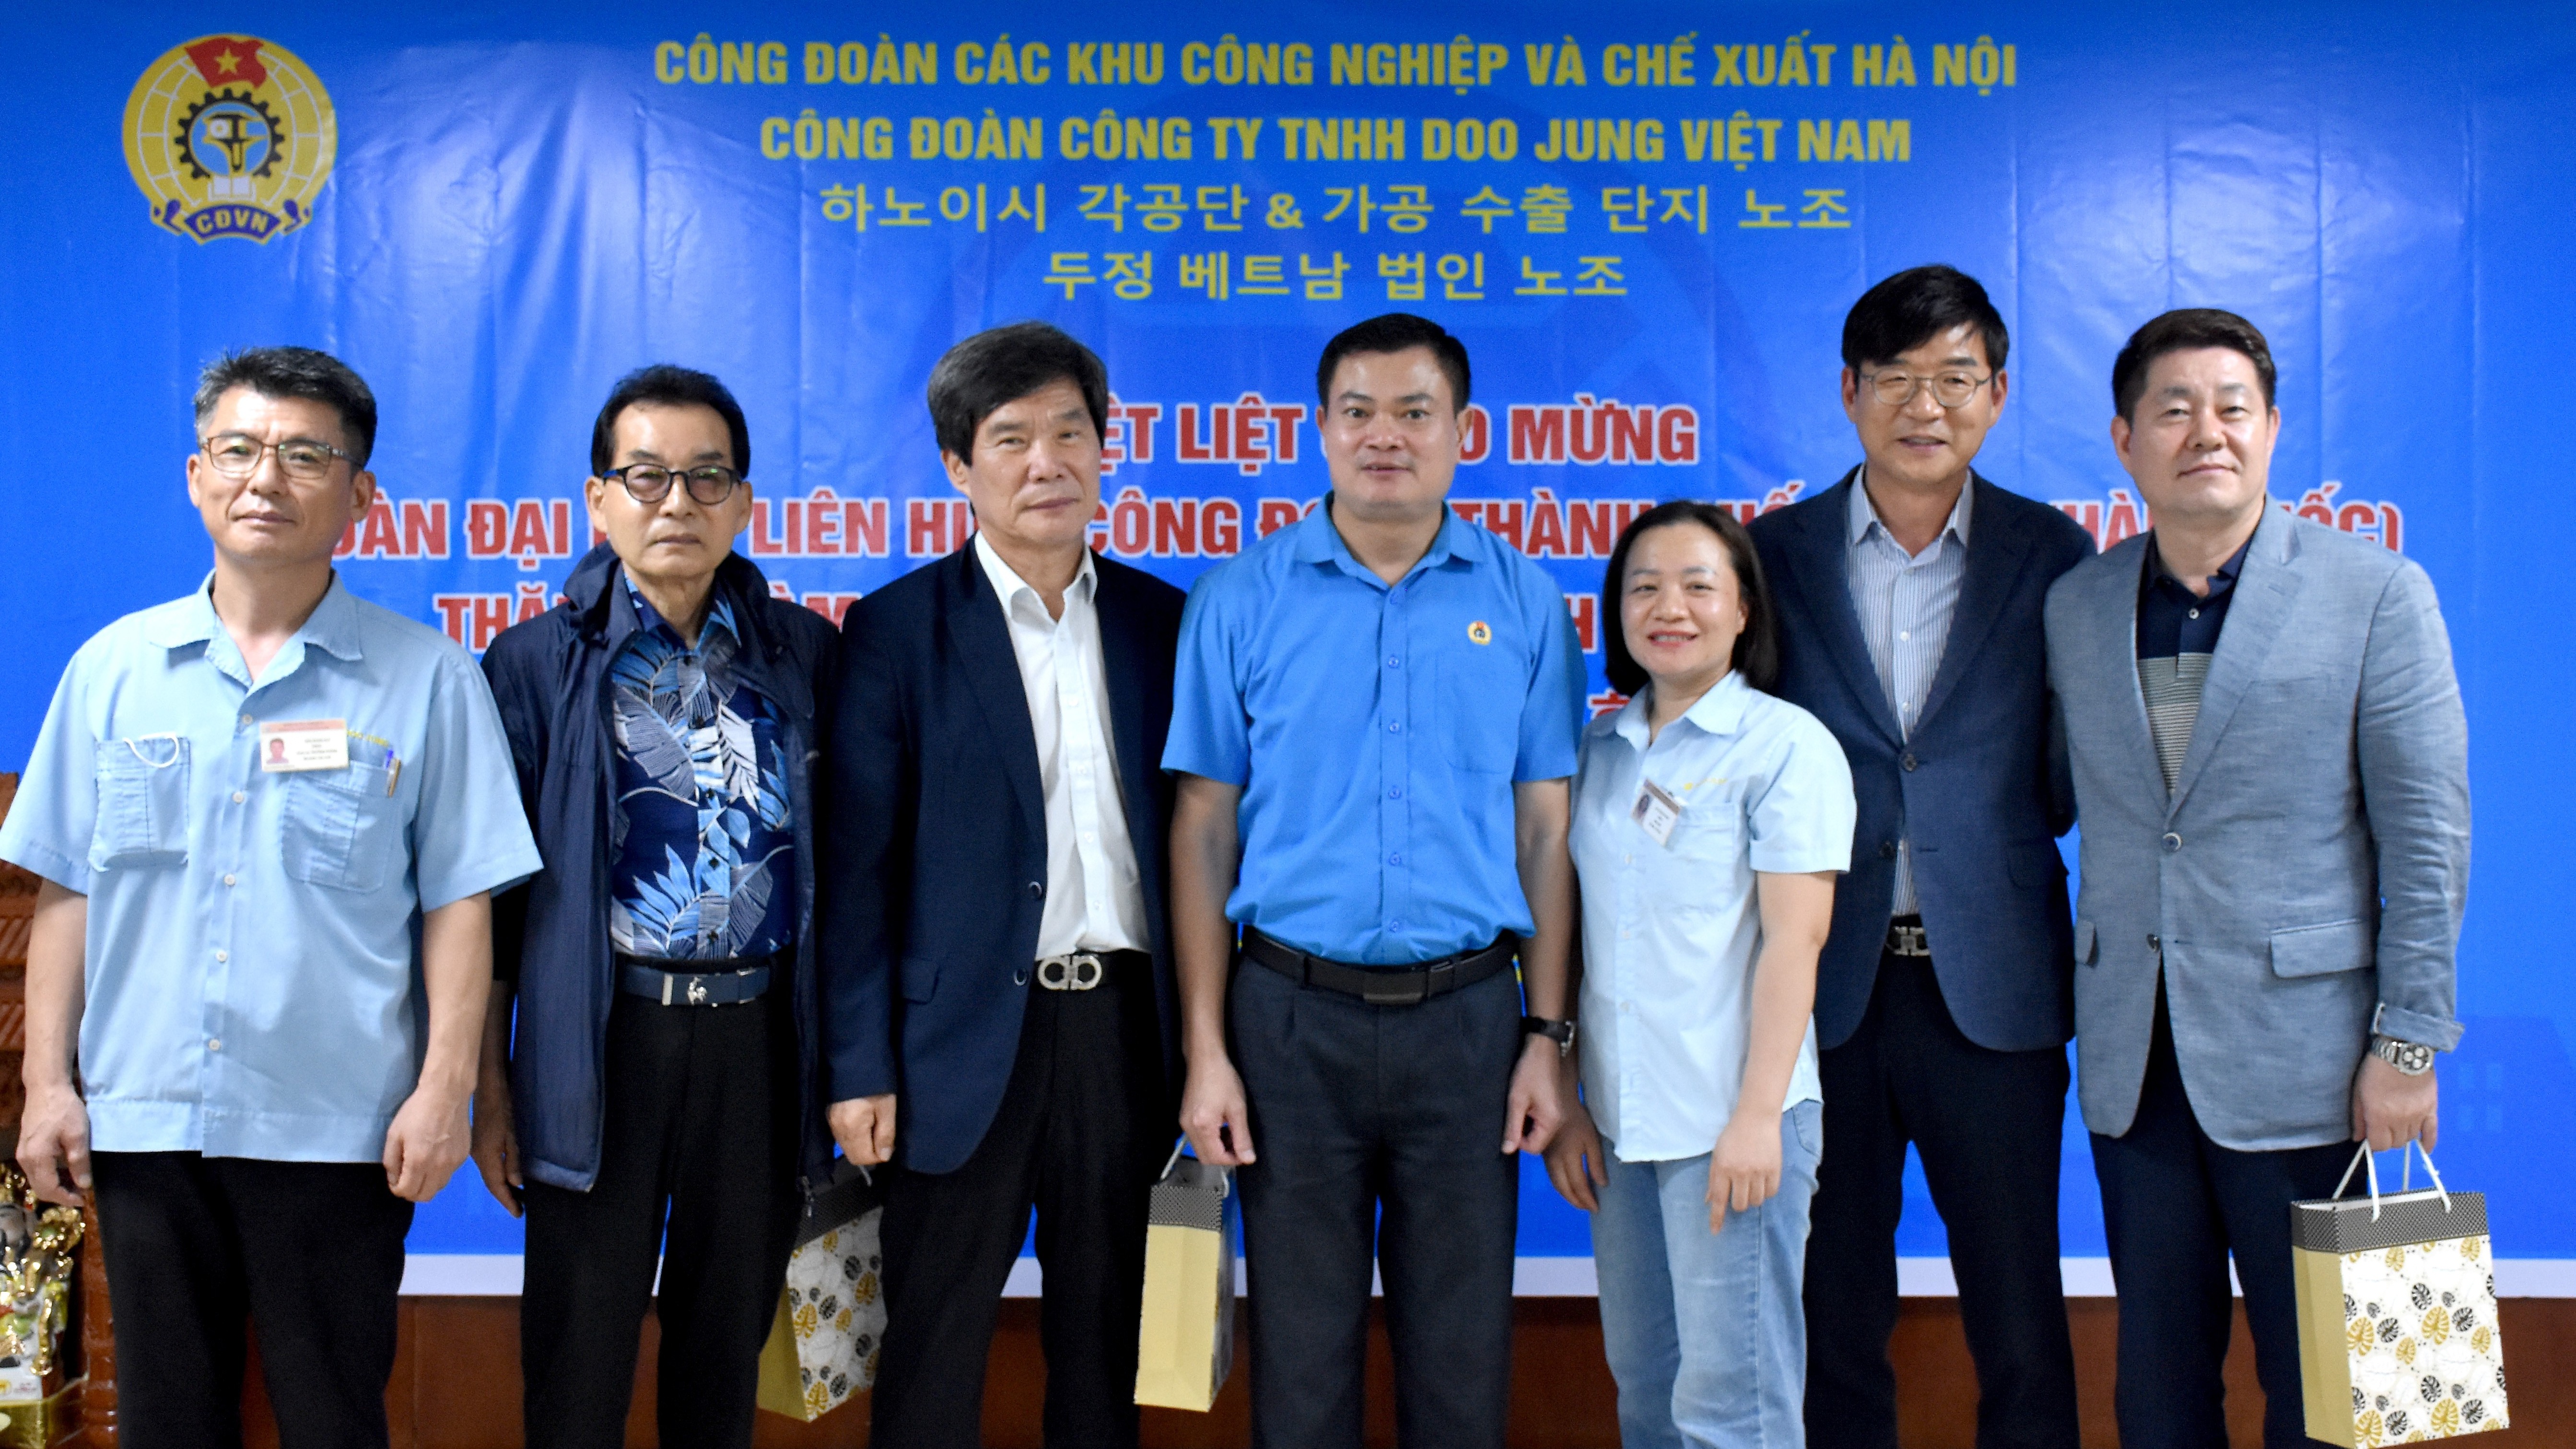 Đoàn đại biểu LHCĐ thành phố Seoul thăm, làm việc tại Công ty TNHH Doo Jung Việt Nam